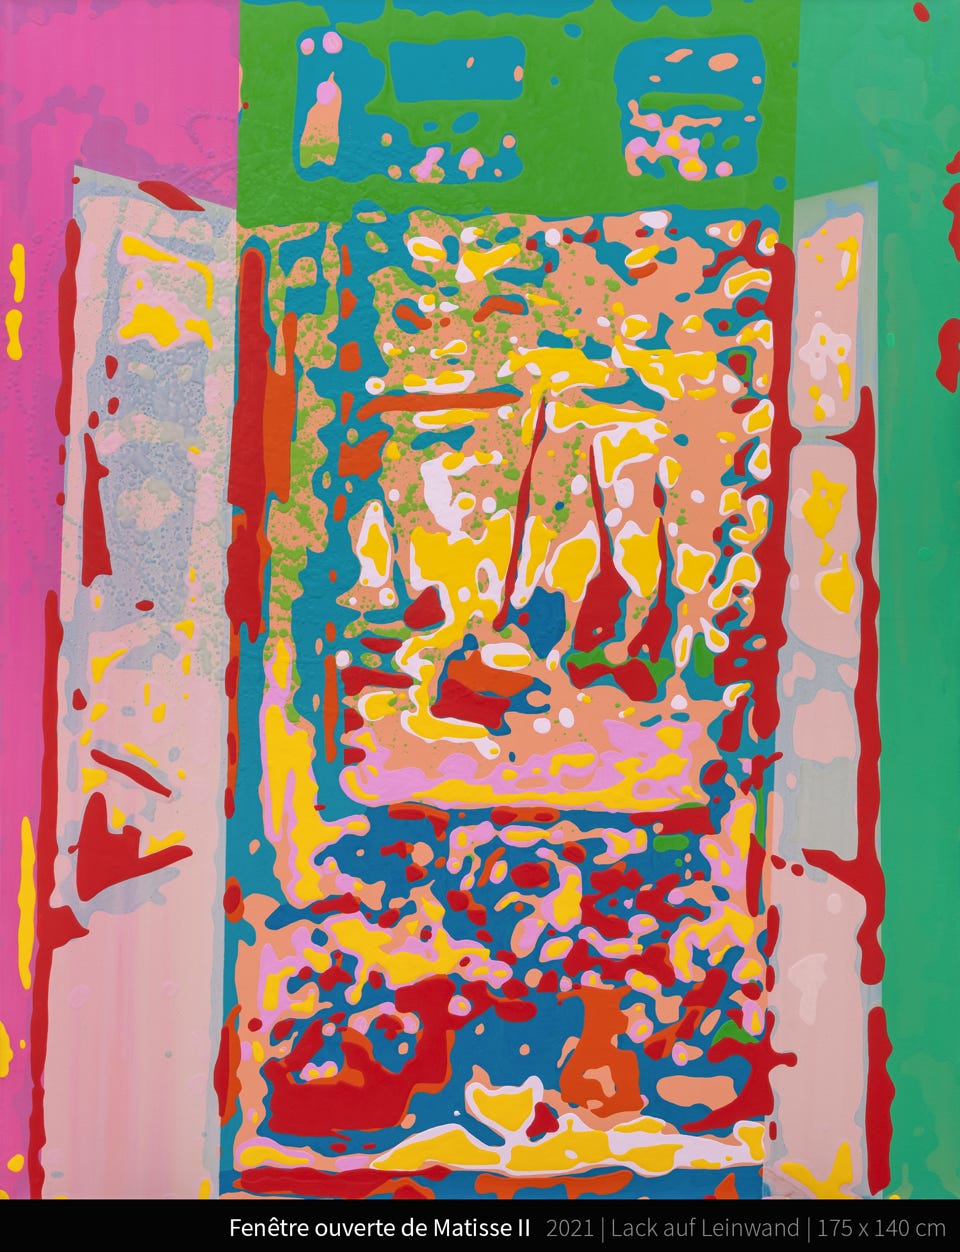 Fenêtre ouverte de Matisse II - Der Künstler Henri Matisse entwickelte das Motiv des Fensters als Schnittstelle zwischen innerem und äußerem Bereich kontinuierlich sein Leben lang weiter. Es spielt eine Schlüsselrolle in seinem Werk, nicht zuletzt, weil die Farben der Natur durch das Fenster ins Innere des Ateliers dringen. Die Kunsthistorikerin Shirley Blum untersucht mehr als fünfzig Kunstwerke – beginnend mit dem Gemälde Studio Under the Eaves (1903) bis zur Rosenkranzkapelle in Vence (1951), um die Bedeutung des wiederkehrenden Motivs bei Matisse‘ Arbeiten detailliert nachzuzeichnen. Insofern verfolgen ihre Ausführungen nicht nur die Entwicklung seiner Fensterbilder, sondern eröffnen gleichzeitig einen Überblick über die Stationen dieses Künstlers, der einige der innovativsten abstrakten Bilder des 20. Jahrhunderts schuf. Fauvismus wird in der Kunstgeschichte einer Stilrichtung der Malerei zugeordnet. Sie entstand aus einer Bewegung innerhalb der französischen Avantgarde zu Anfang des 20. Jahrhunderts. Der Fauvismus bildet die erste Bewegung der klassischen Moderne. Die Hauptvertreter der zunächst geschmähten Bewegung waren Henri Matisse, André Derain und Maurice de Vlaminck. Ihnen schlossen sich Raoul Dufy, Albert Marquet, Kees van Dongen, Othon Friesz und Georges Braque an.[1][2] Von einigen Kunsthistorikern werden auch Henri Manguin, Charles Camoin, Jean Puy und Louis Valtat zu den Fauves gezählt, neueren Tendenzen zufolge ebenfalls Georges Rouault.[3] In den fauvistischen Bildern sollte die Farbgebung nicht mehr der illusionistischen Darstellung eines Gegenstandes dienen. Die malerische Aussage entstand aus dem Zusammenklang der Farbflächen. Typisch für die meisten Werke sind ihre leuchtenden Farben. Die Überlegungen zur Darstellung des Raumes sind jedoch ebenso wesentlicher Bestandteil der Bildkomposition.[4][1] Die Wurzeln des Fauvismus entstammen dem Impressionismus, Ziel war aber, der Flüchtigkeit impressionistischer Bilder entgegenzuarbeiten, um dem Werk mehr Dauer (frz. durée) zu verleihen. Eine eigene Theorie oder ein Manifest hatte der Fauvismus dabei nicht. Einer neueren Sichtweise zufolge habe der Fauvismus Gemeinsamkeiten mit dem Expressionismus.